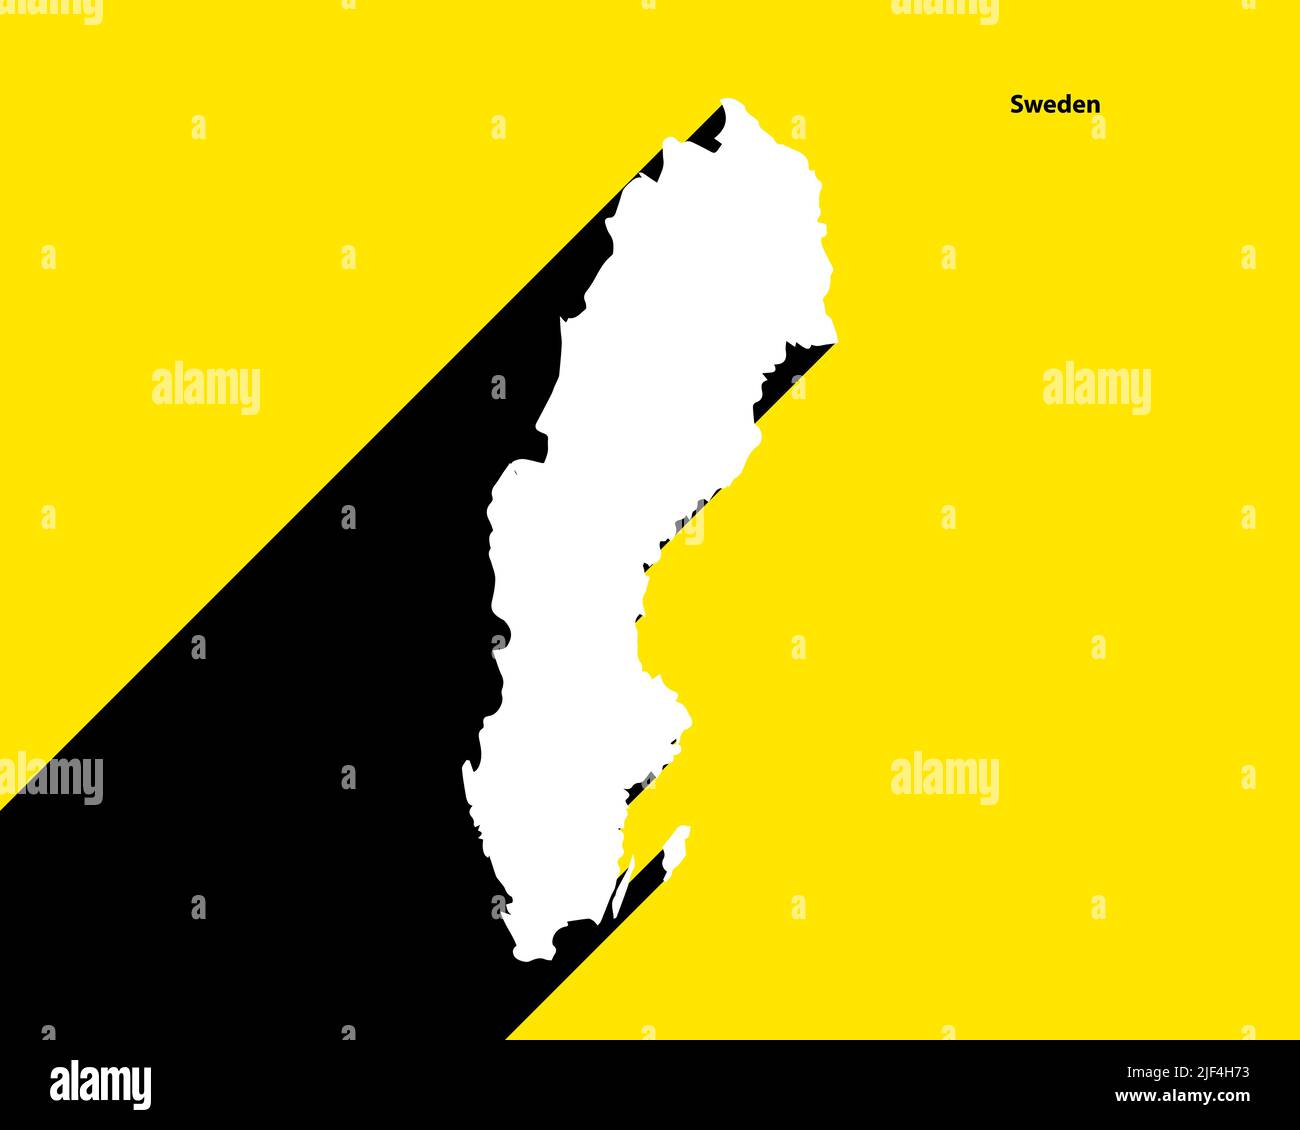 Mappa Svezia su poster retrò con lunga ombra. Segno vintage facile da modificare, manipolare, ridimensionare o colorare. Illustrazione Vettoriale